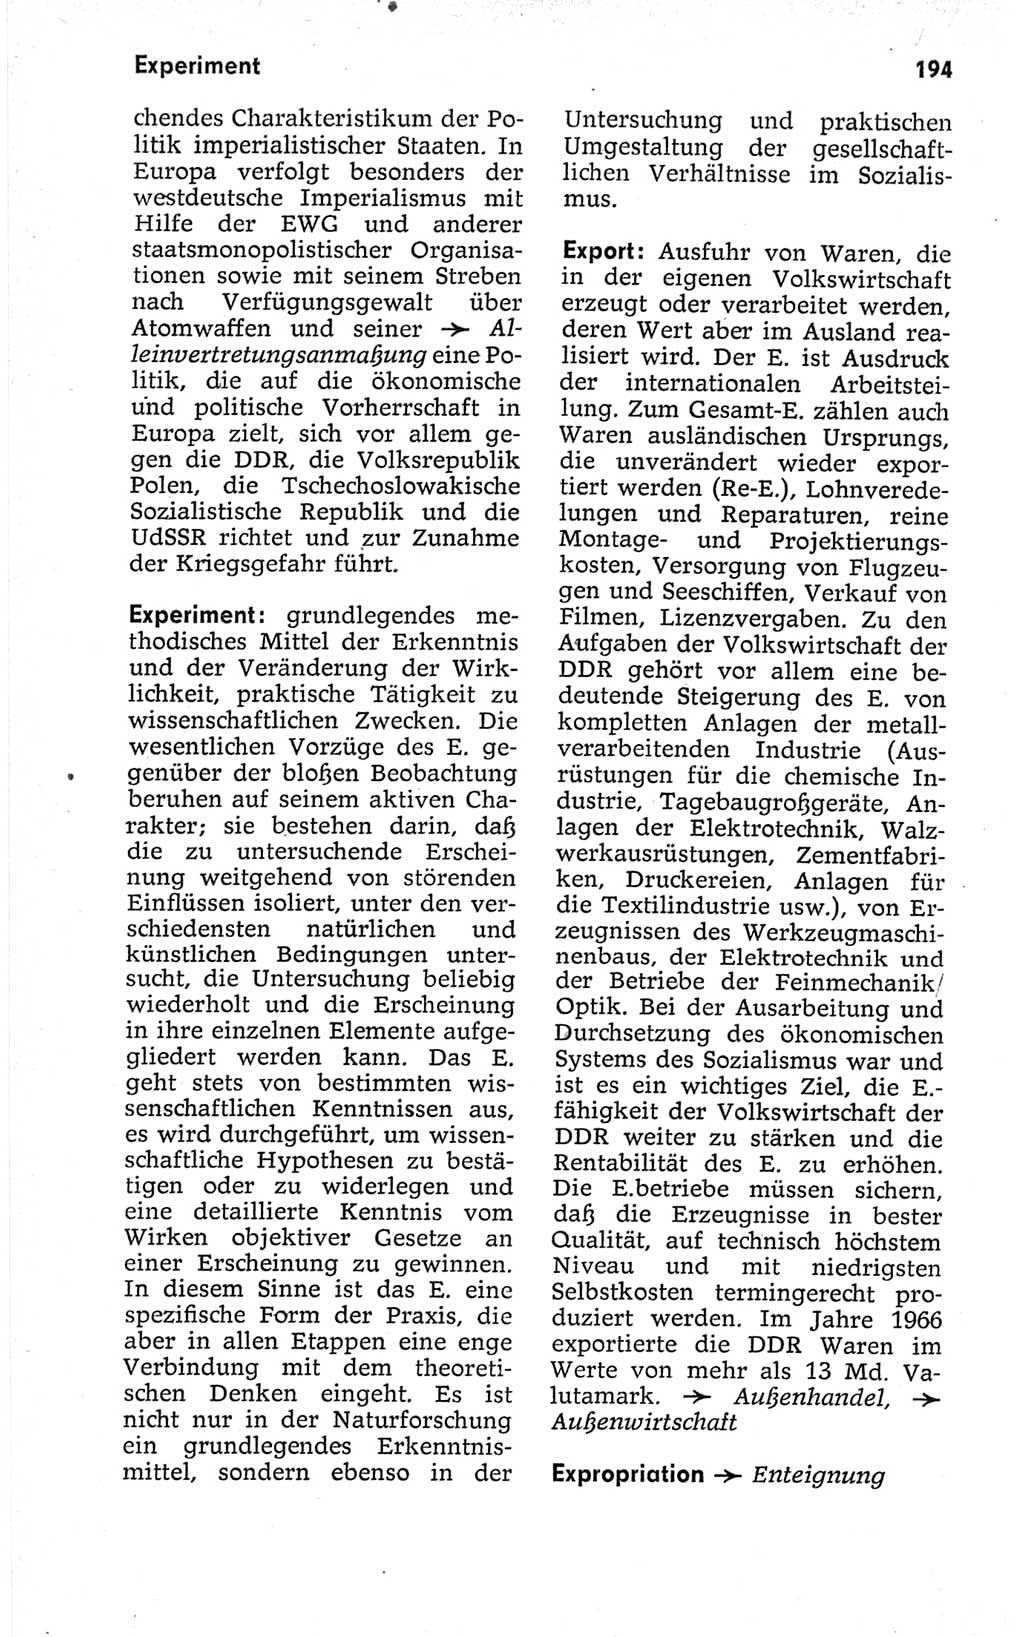 Kleines politisches Wörterbuch [Deutsche Demokratische Republik (DDR)] 1967, Seite 194 (Kl. pol. Wb. DDR 1967, S. 194)